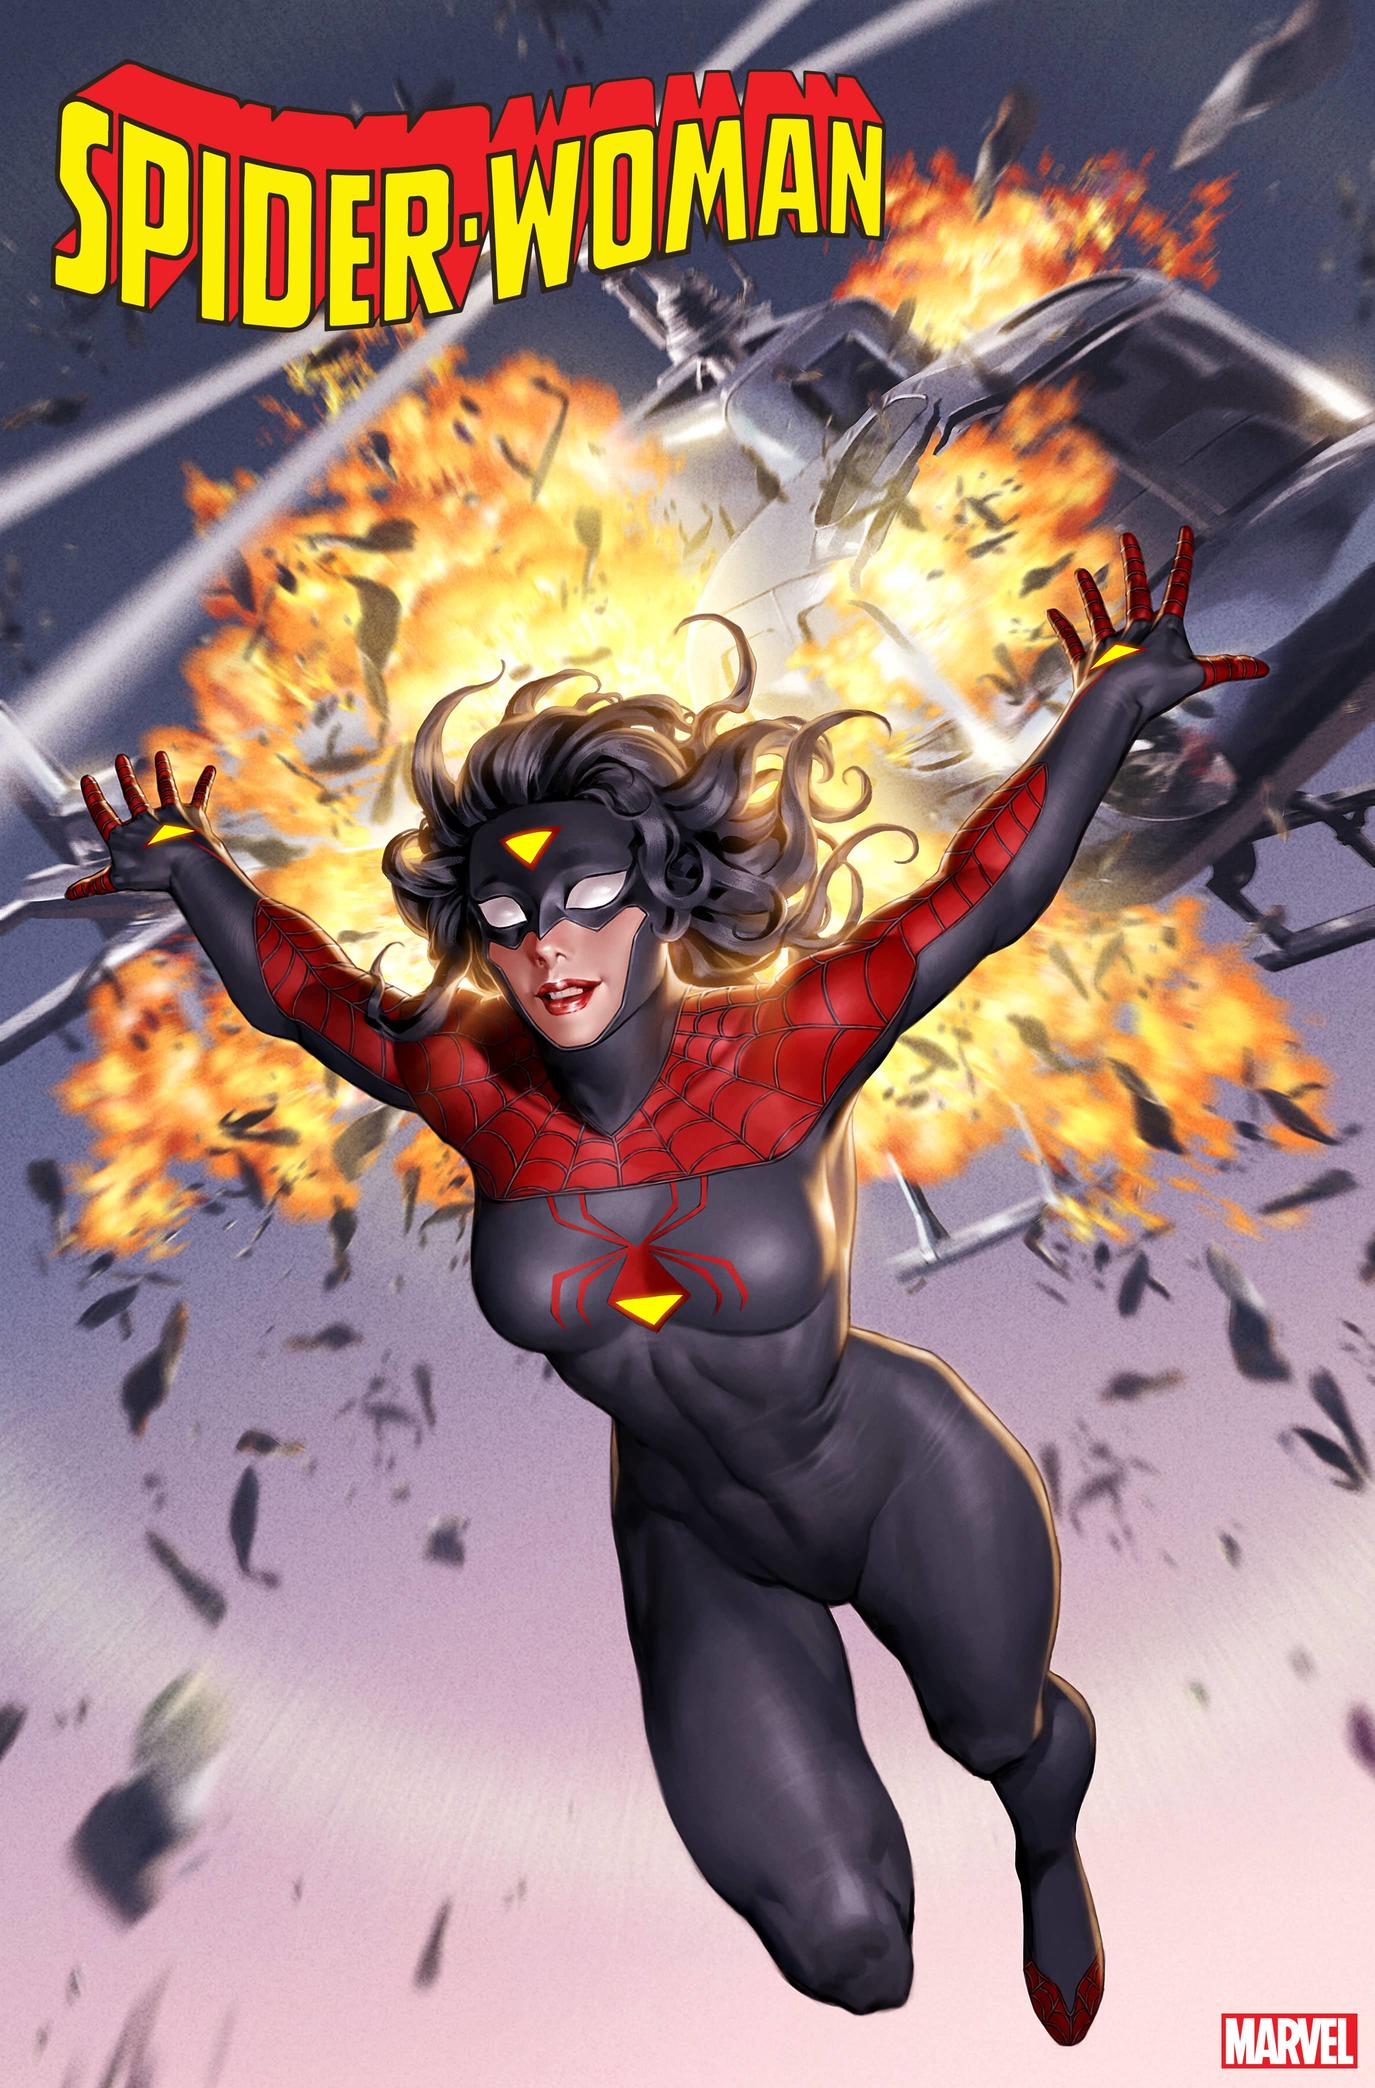 傲世皇朝代理 杰西卡·德鲁的新时代《蜘蛛侠》第一枚戒指的两个新版本封面